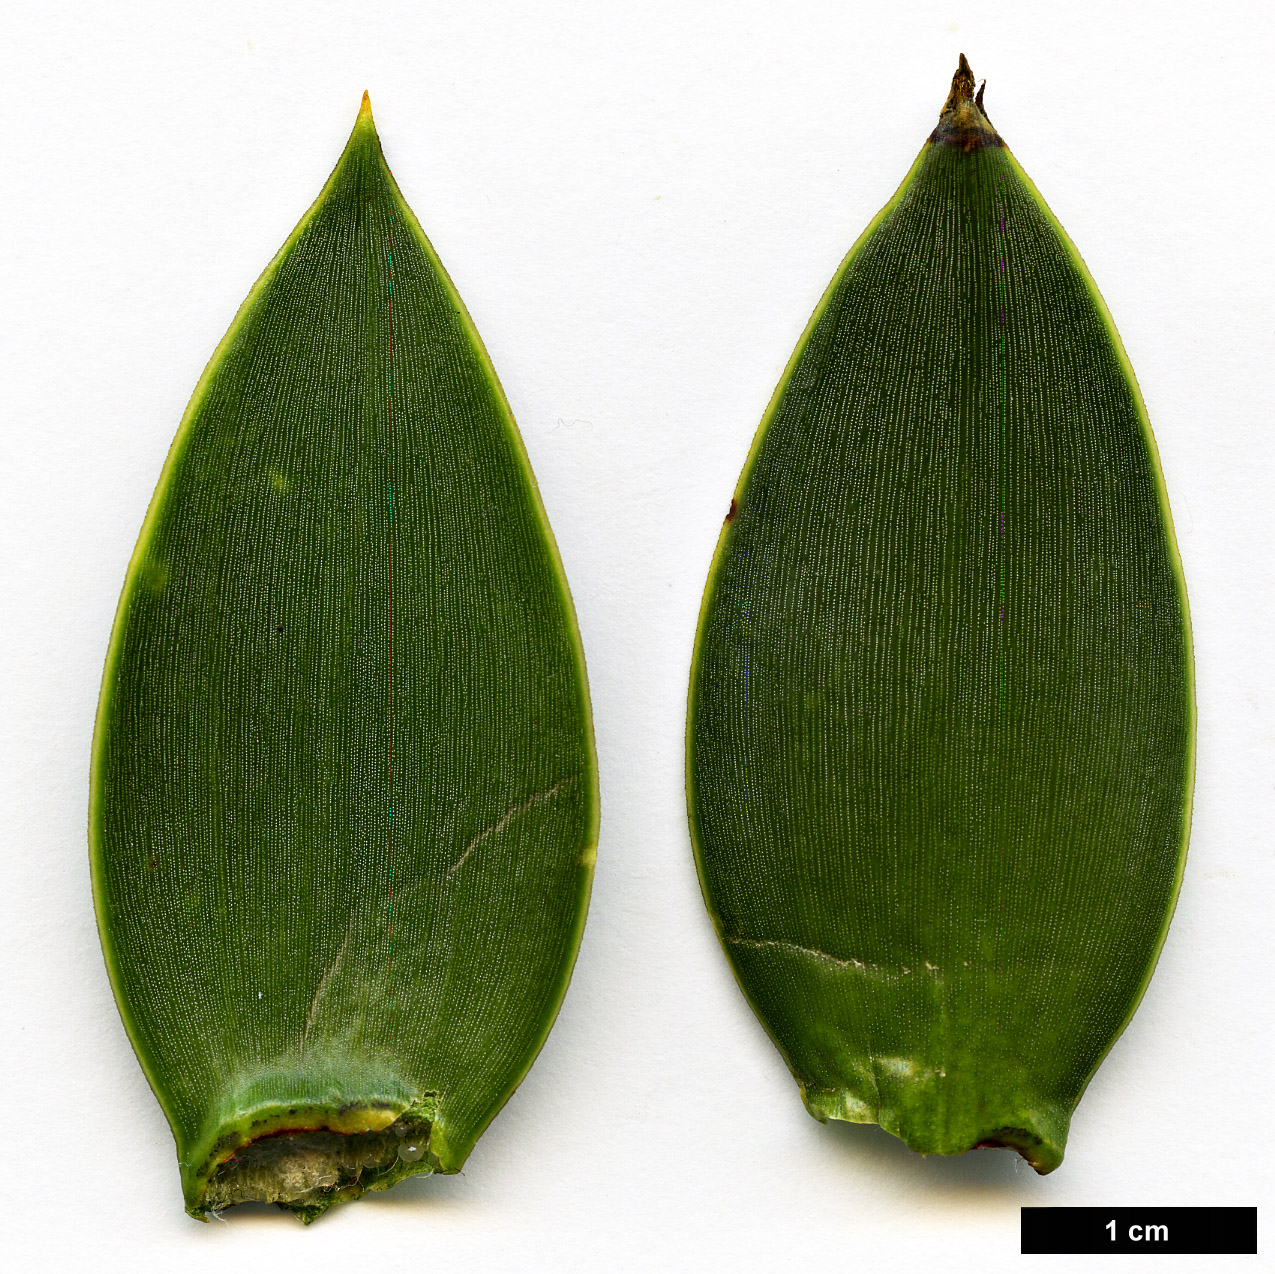 High resolution image: Family: Araucariaceae - Genus: Araucaria - Taxon: araucana